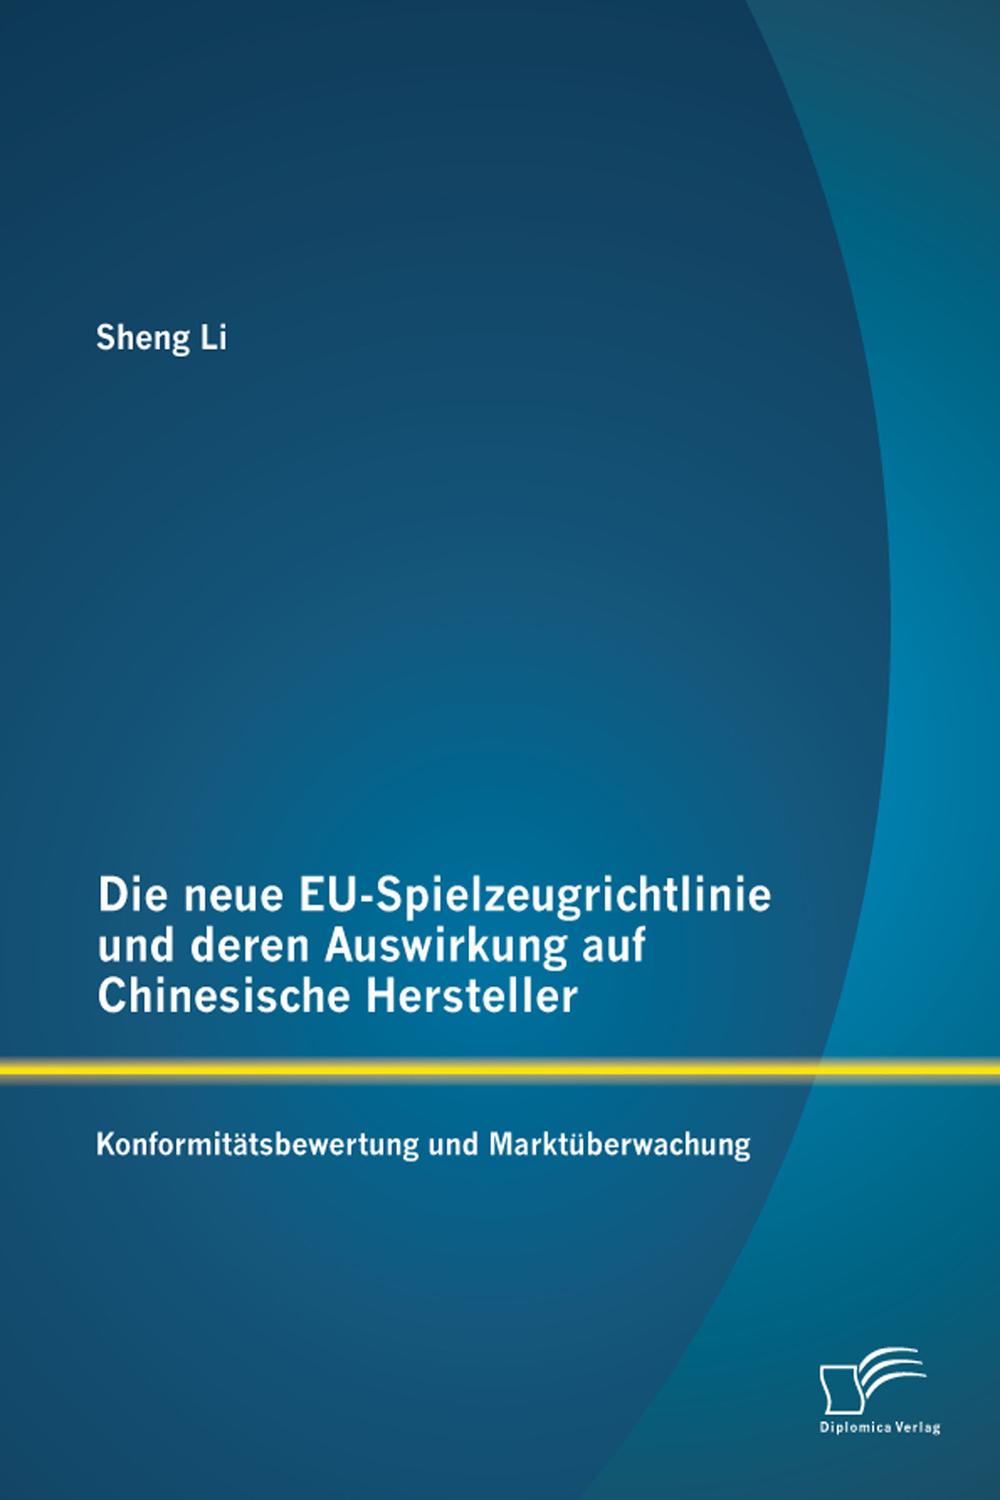 Die neue EU-Spielzeugrichtlinie und deren Auswirkung auf Chinesische Hersteller: Konformitätsbewertung und Marktüberwachung - Sheng Li